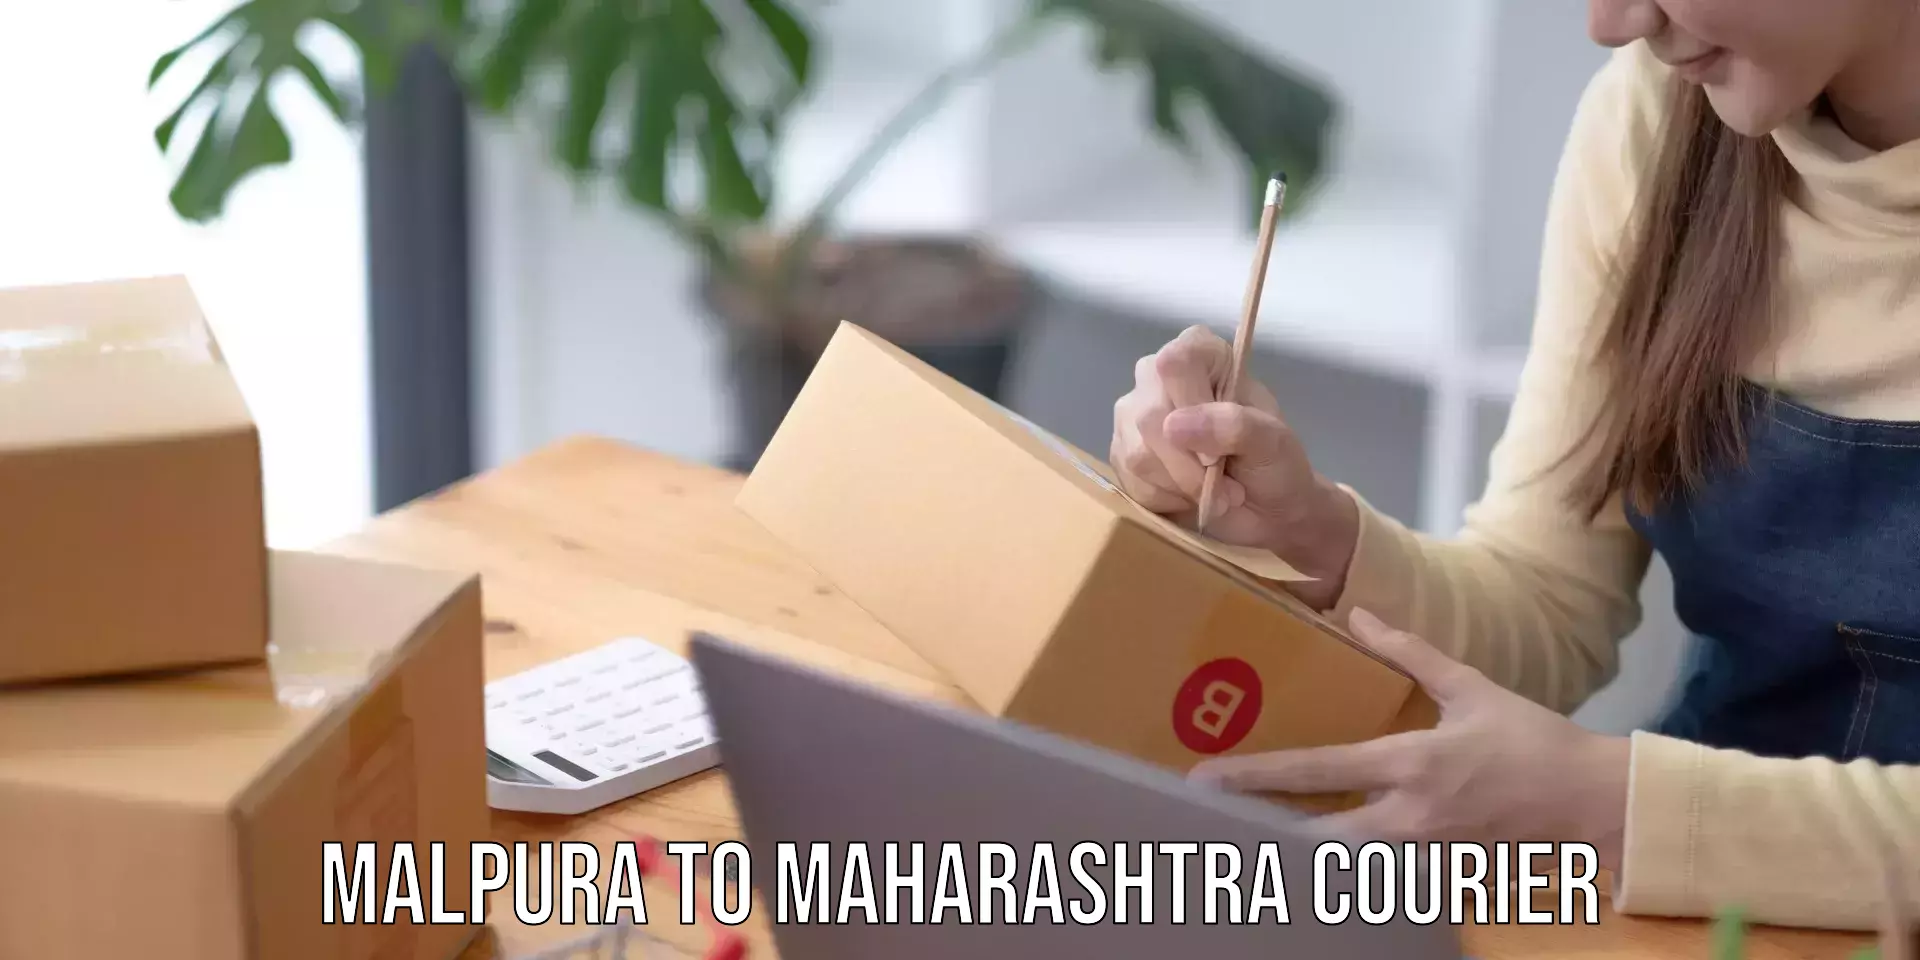 Express mail solutions Malpura to Maharashtra